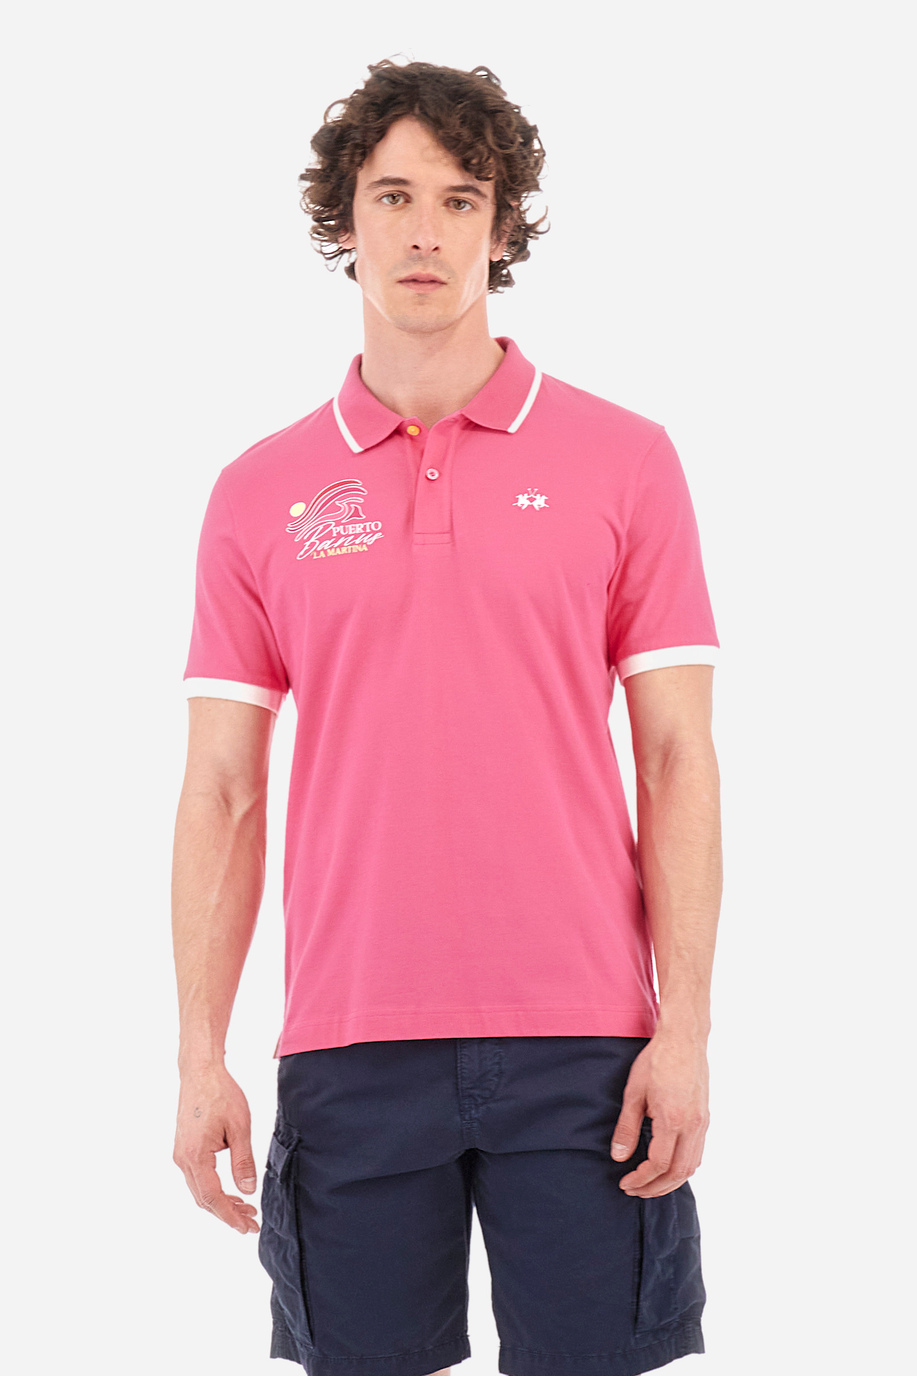 Polo regular fit in cotone elasticizzato - Yarden - Polo Shirts | La Martina - Official Online Shop